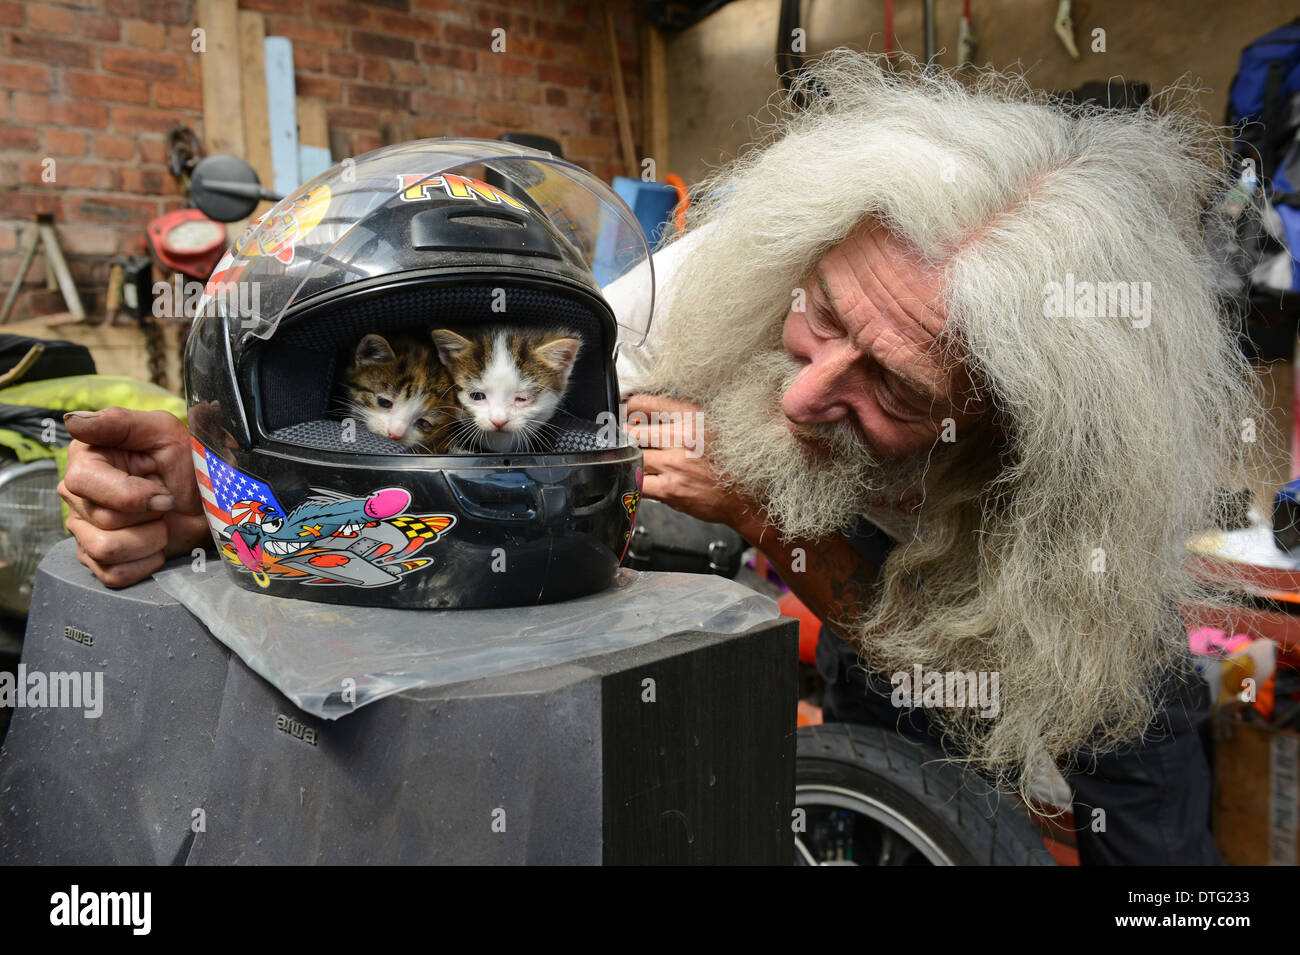 Uomo con capelli lunghi e barba John Julian con due gattini che ha trovato nel suo capanno all'interno del suo casco motociclistico Foto Stock